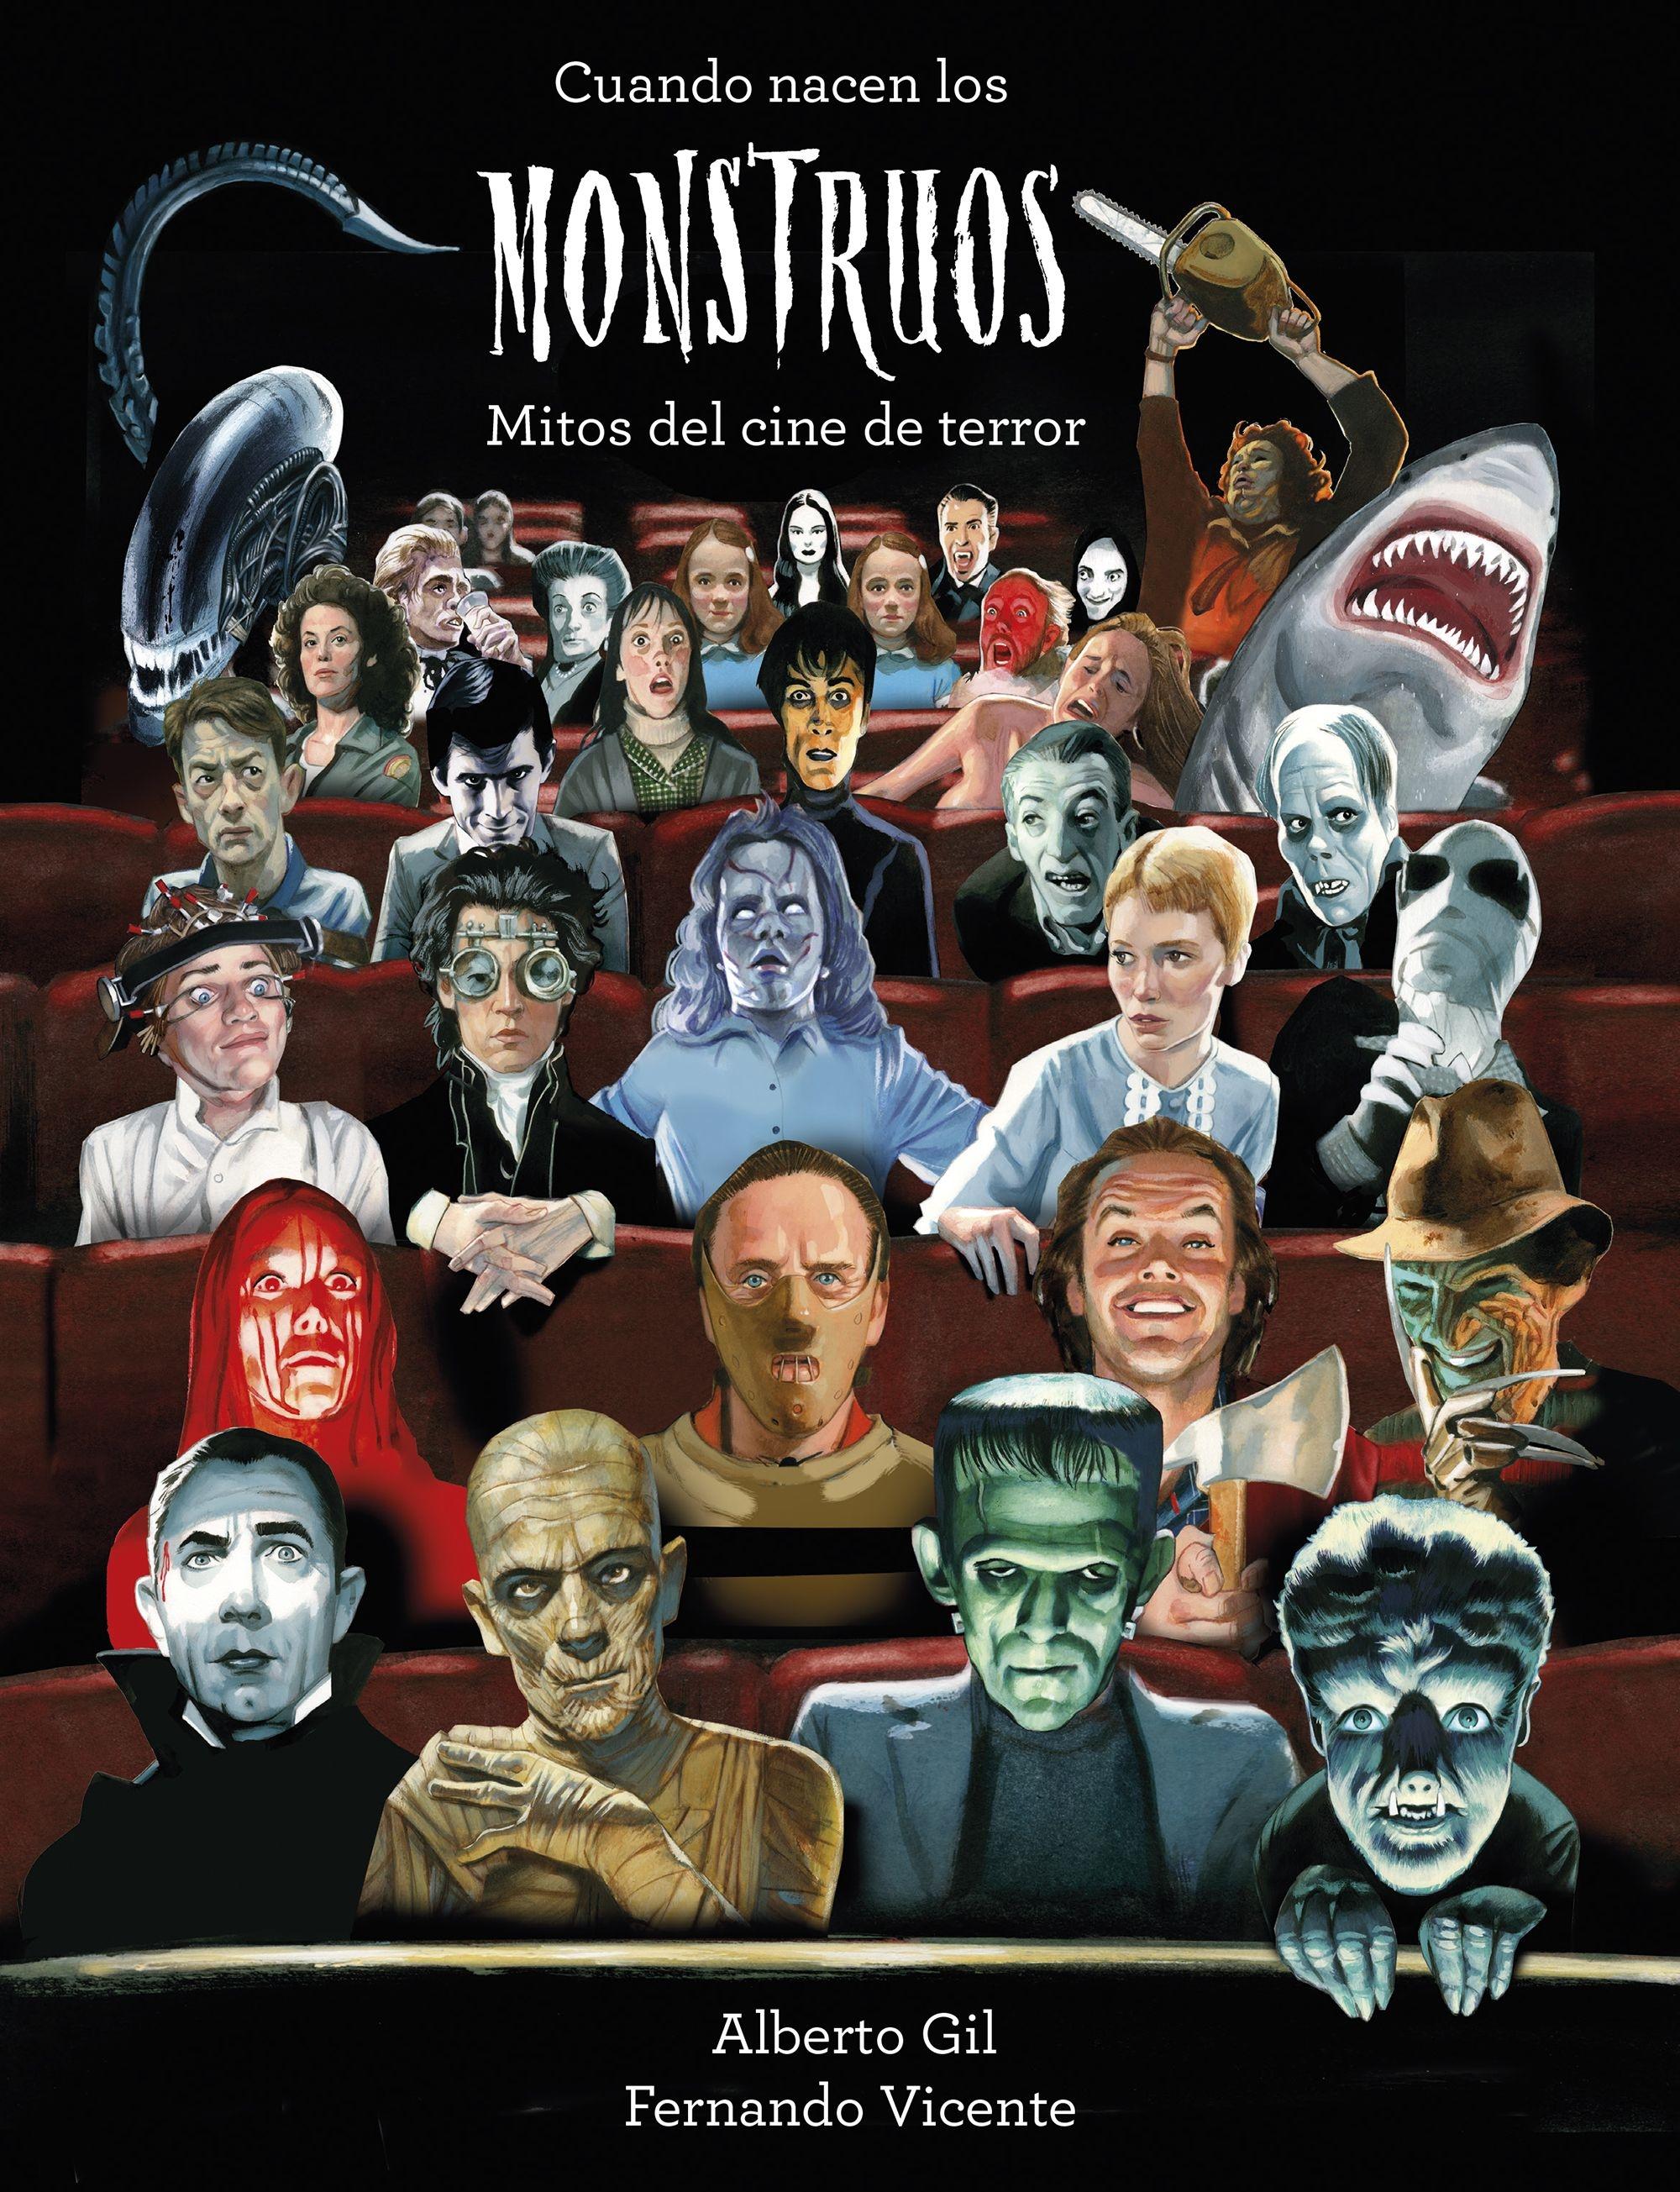 Cuando nacen los monstruos "Mitos del cine de terror"